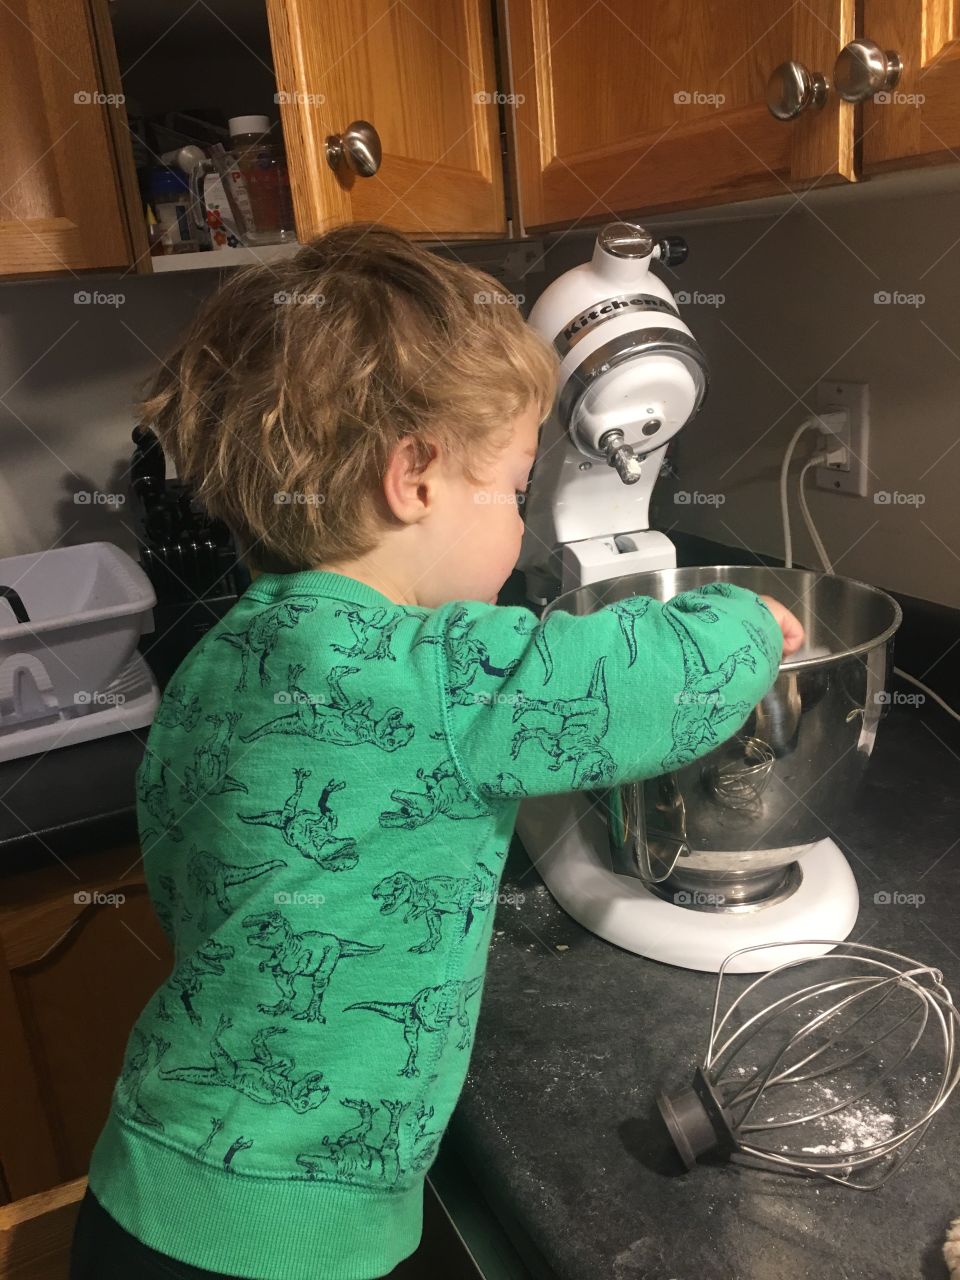 Helping mom make pancakes 